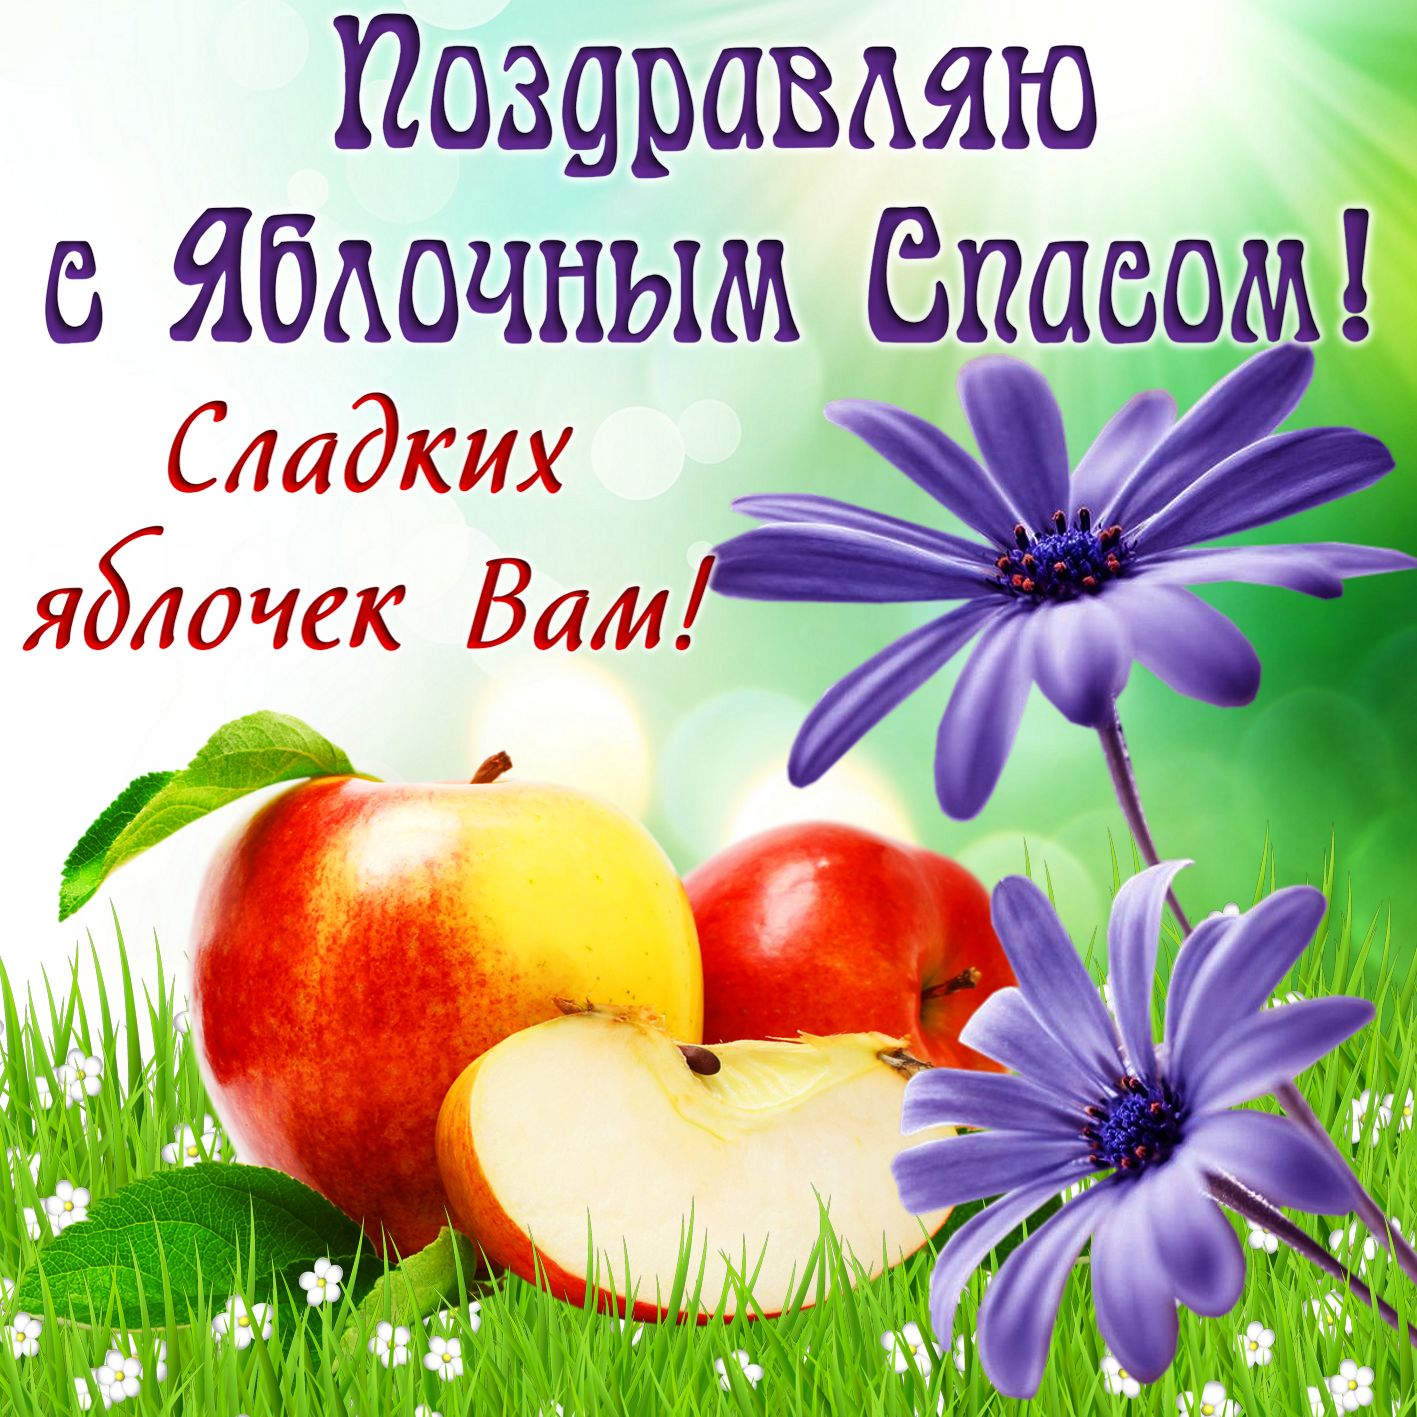 Открытка на Яблочный Спас - яблоки и цветы на травке